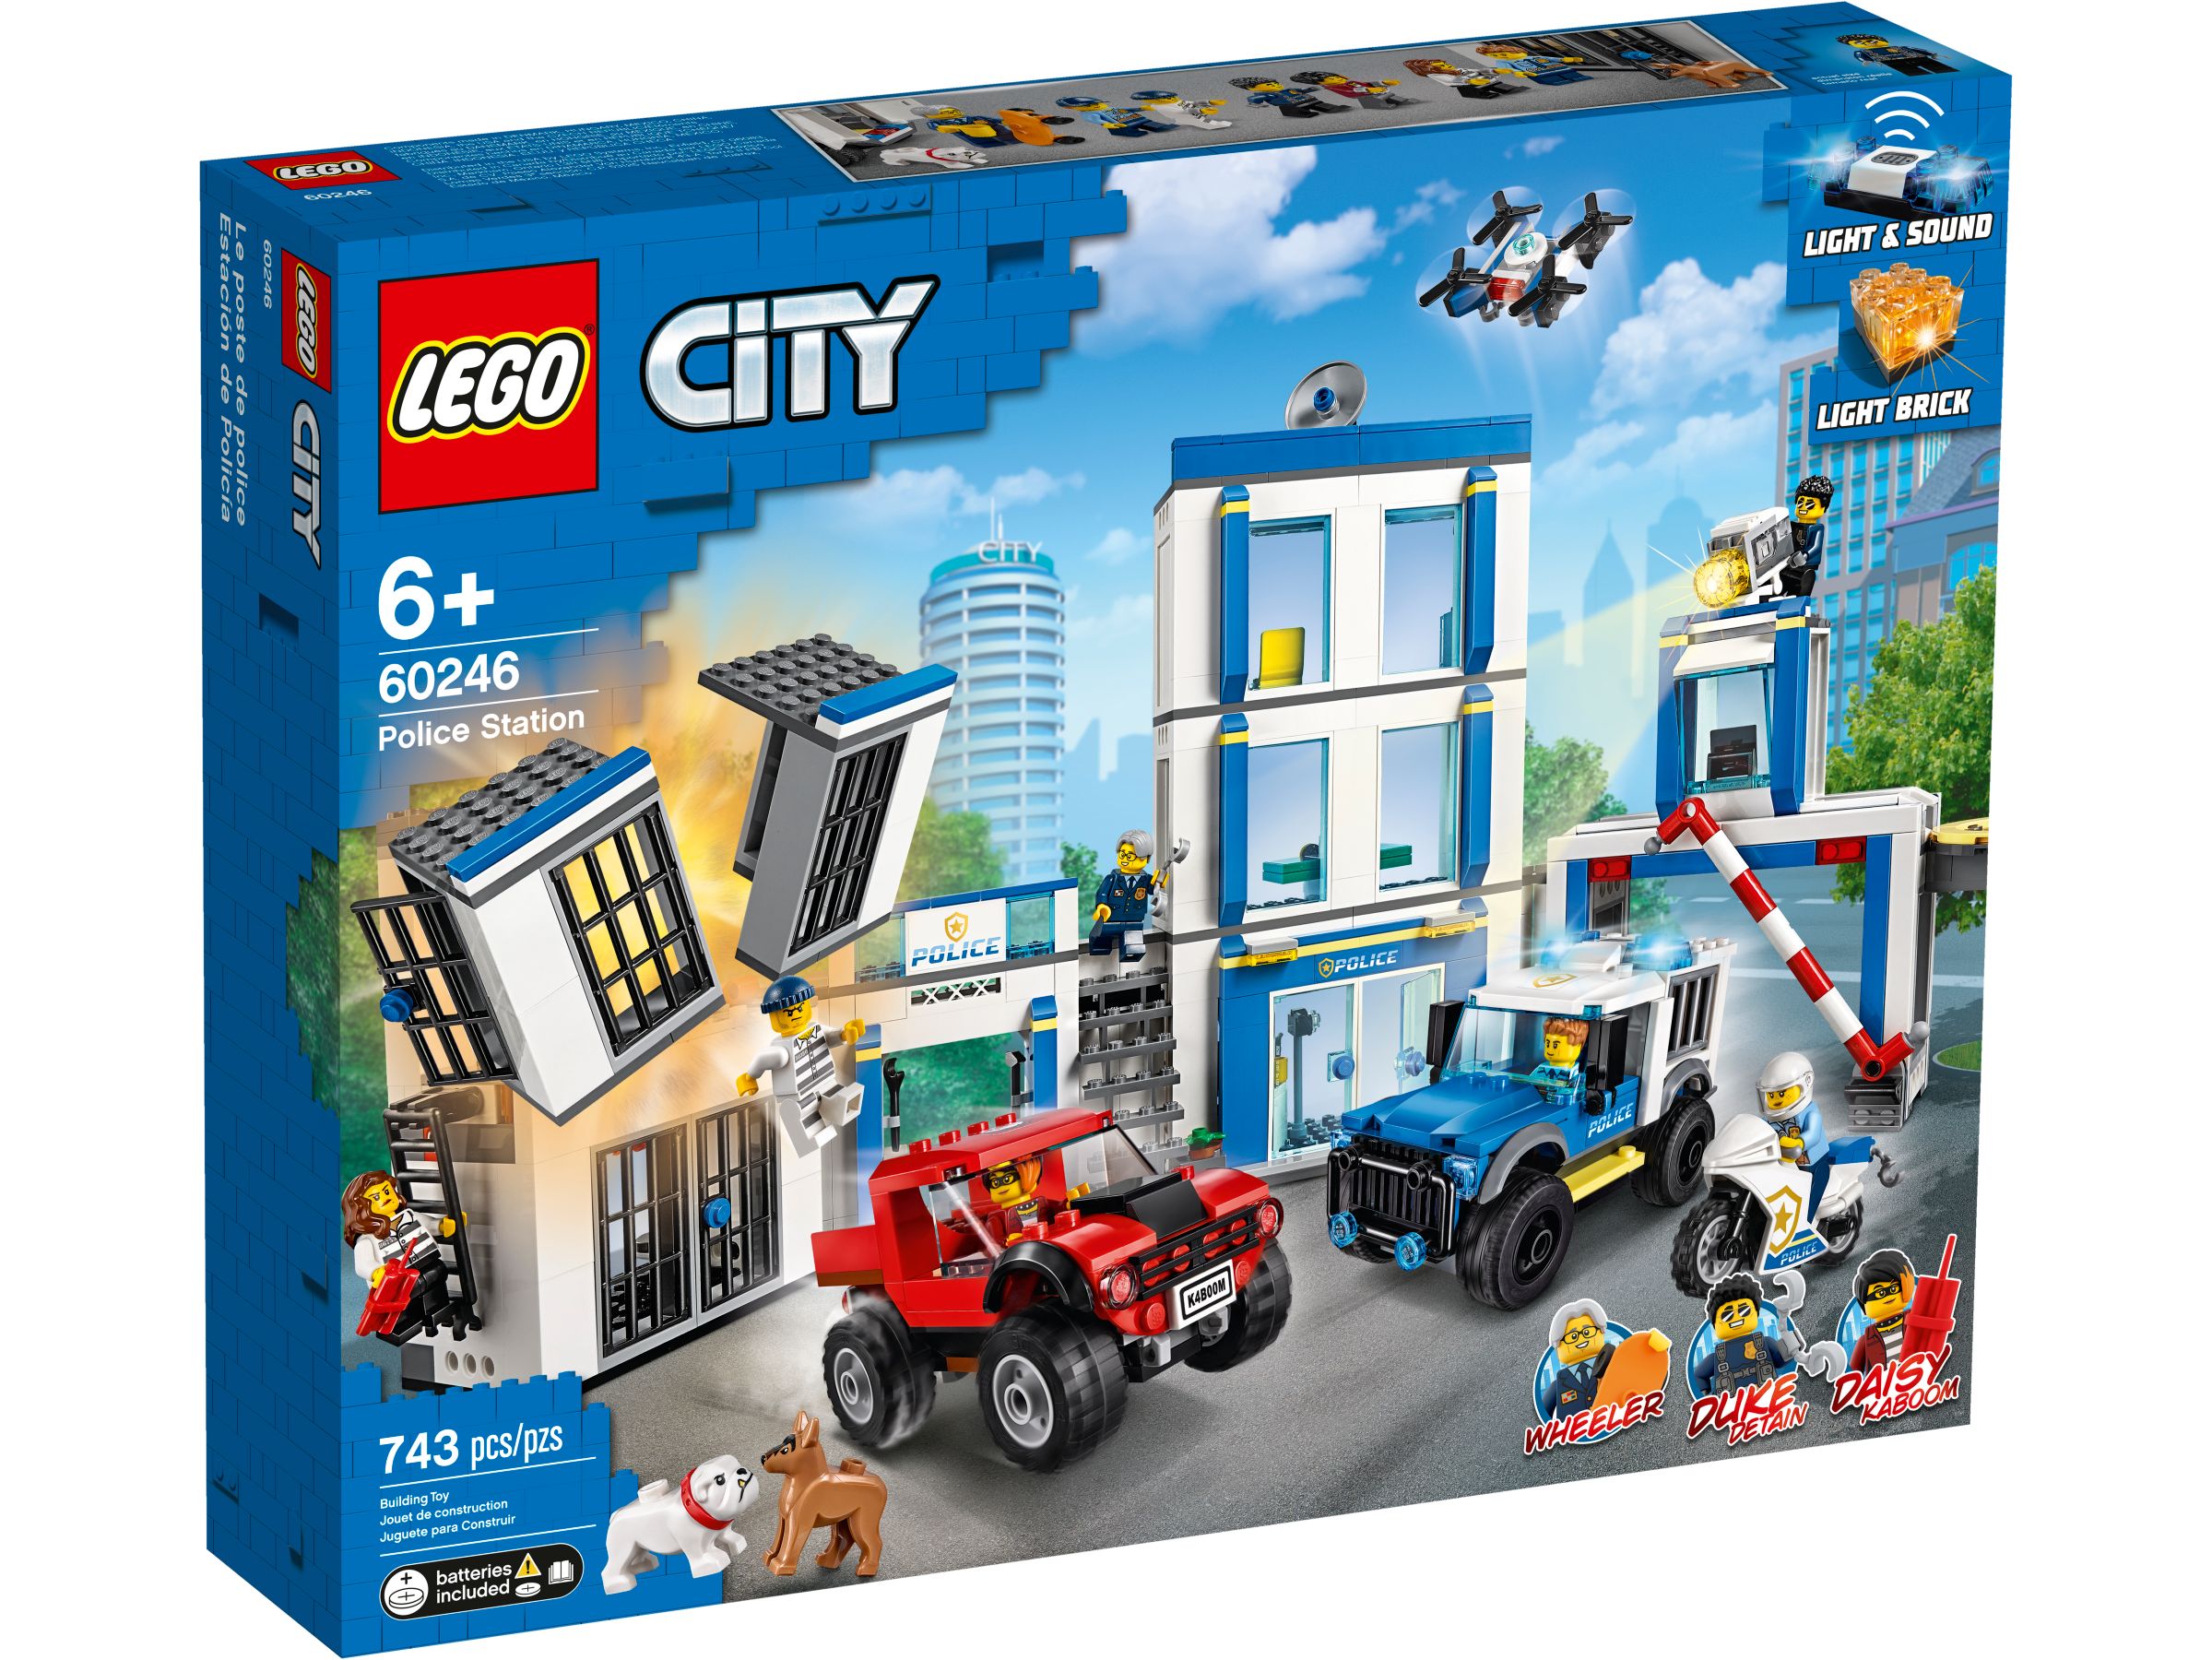 LEGO City 60246 Polizeistation LEGO_60246_alt1.jpg